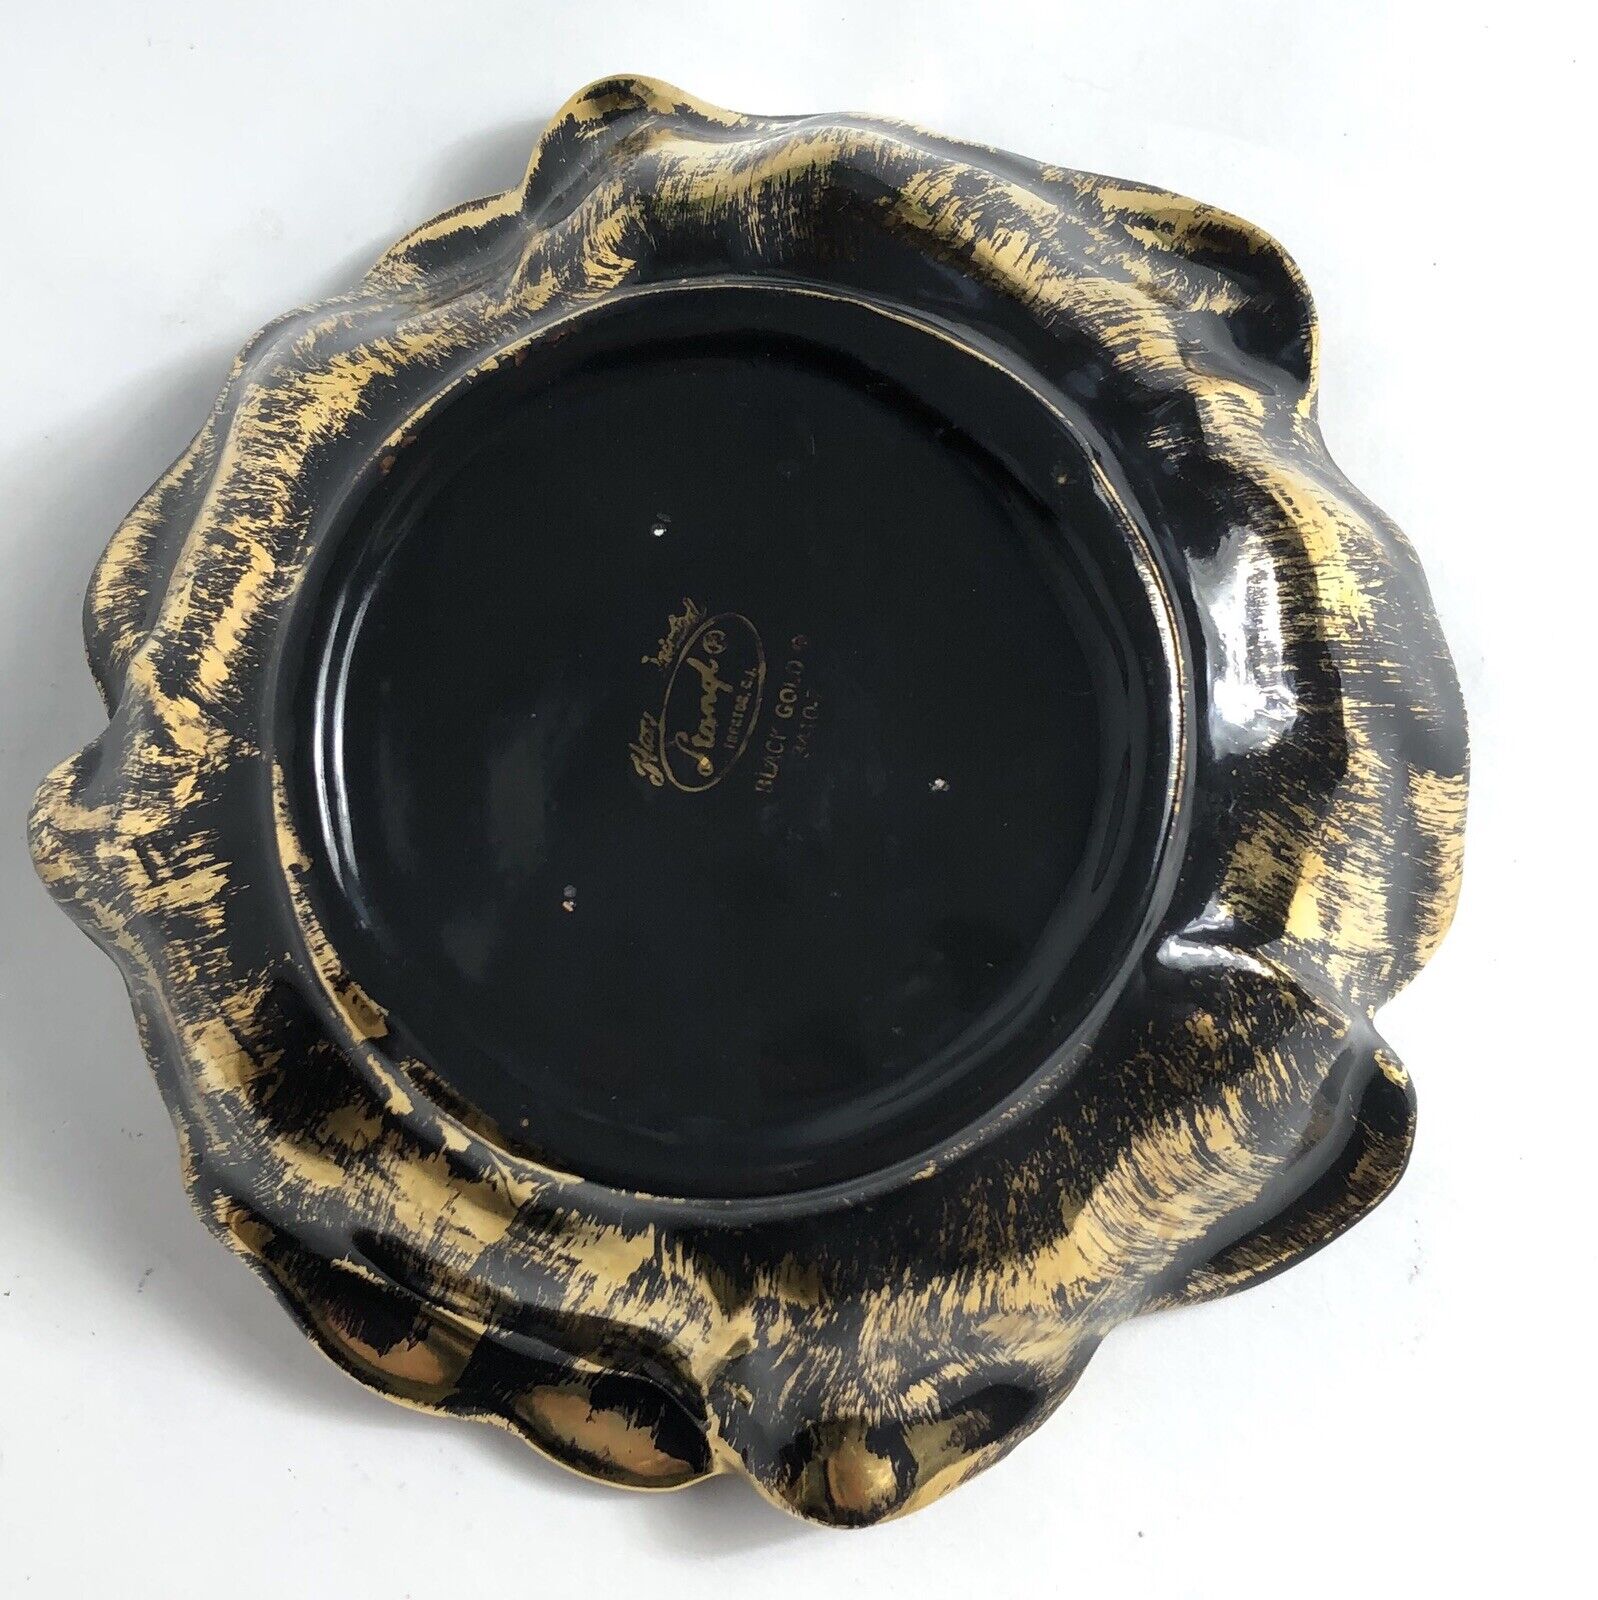 Vintage Stangl Art Pottery Black Gold Flower Bowl Dish 3410-7